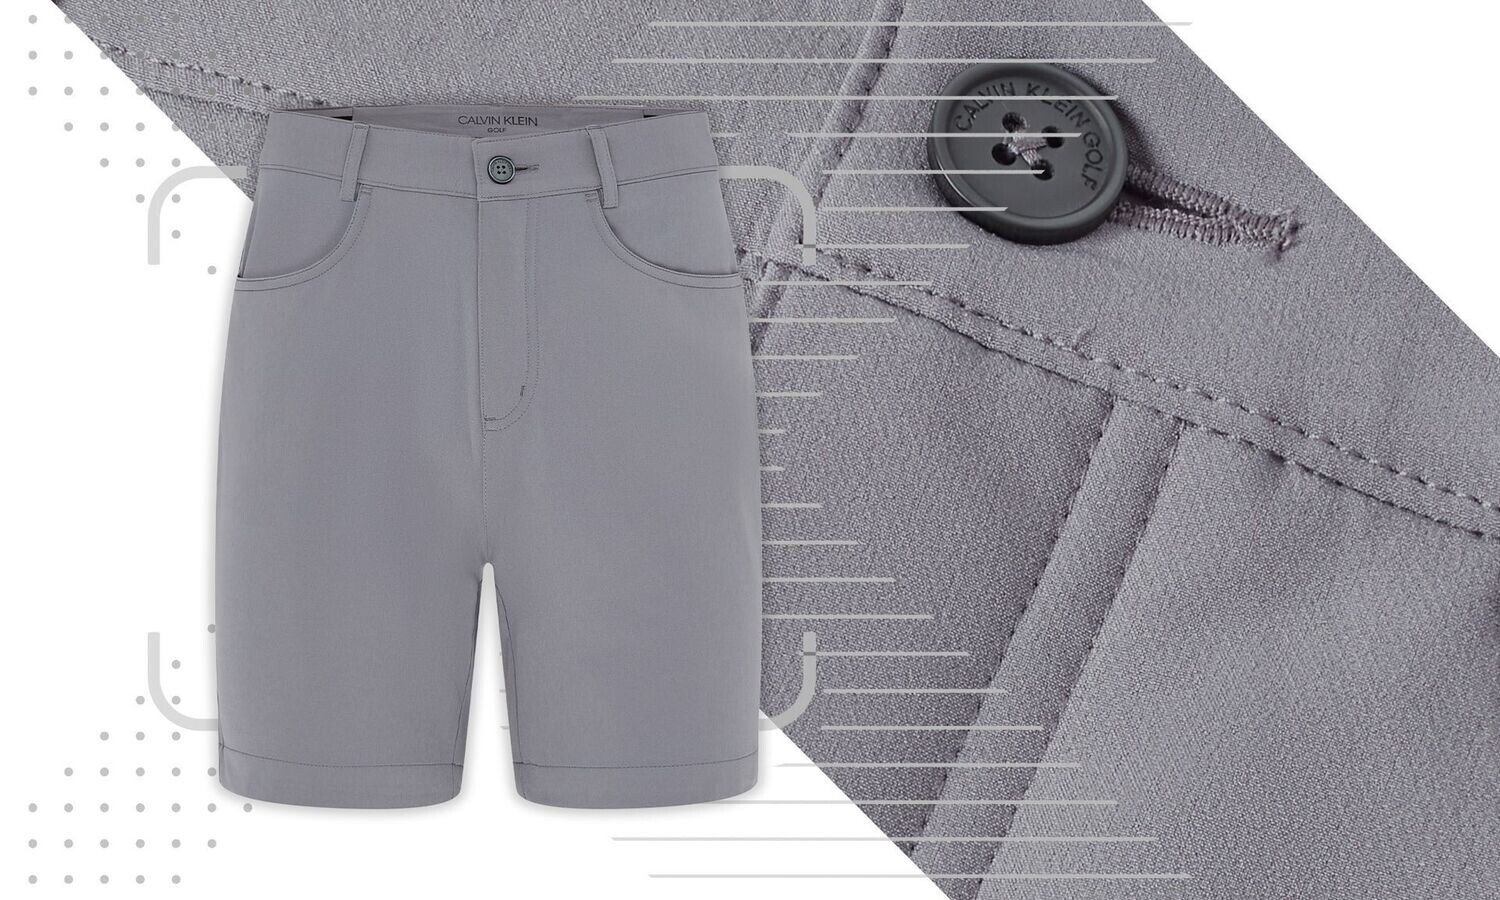 Calvin Klein Genius 4-Way Stretch Golf Shorts - Silver, Size: 32 Inch